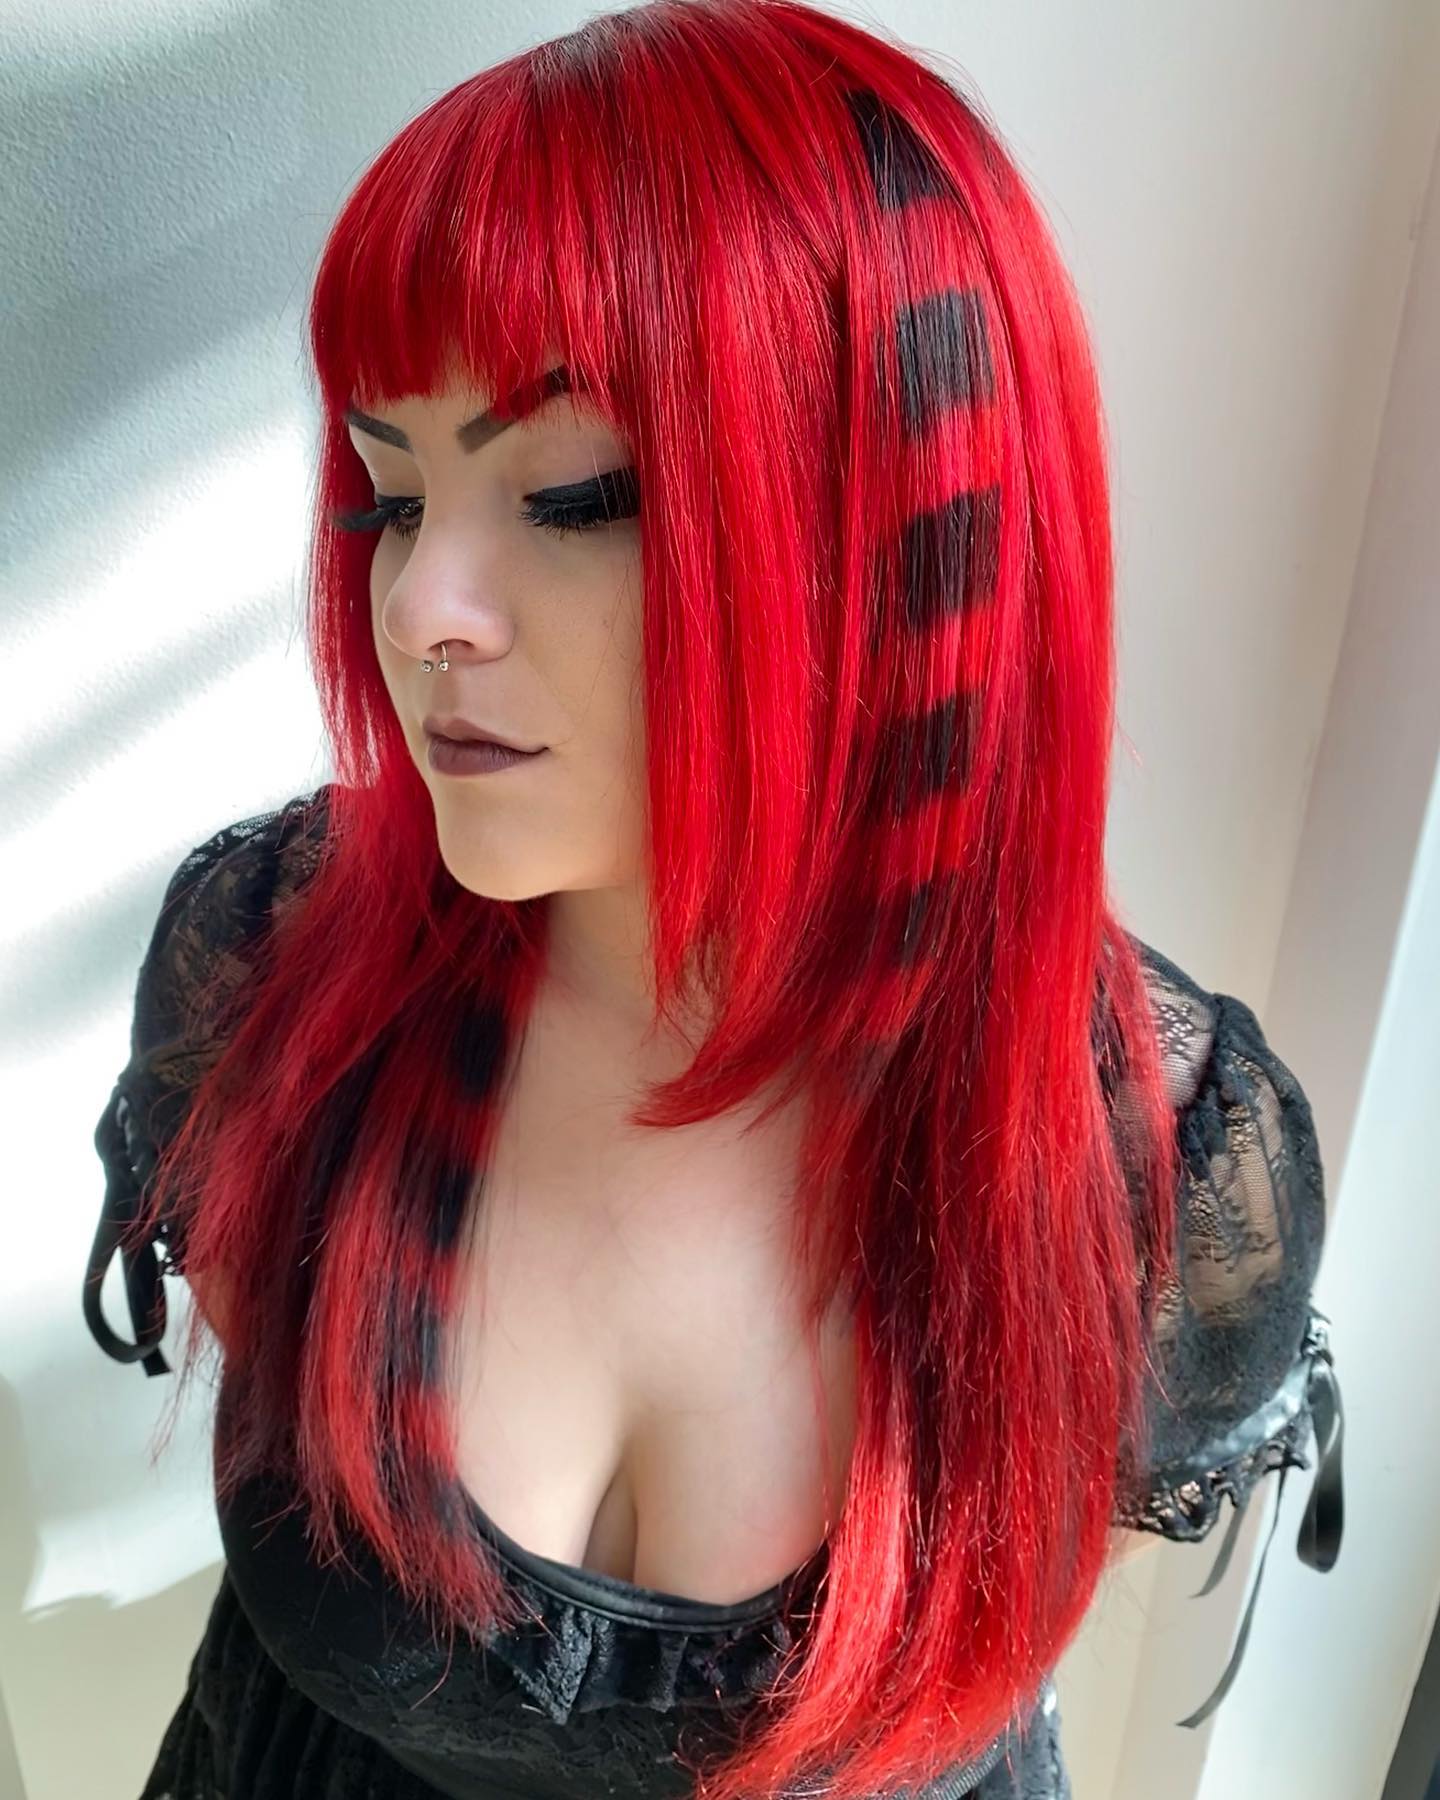 vurig rood haar met zwarte patronen